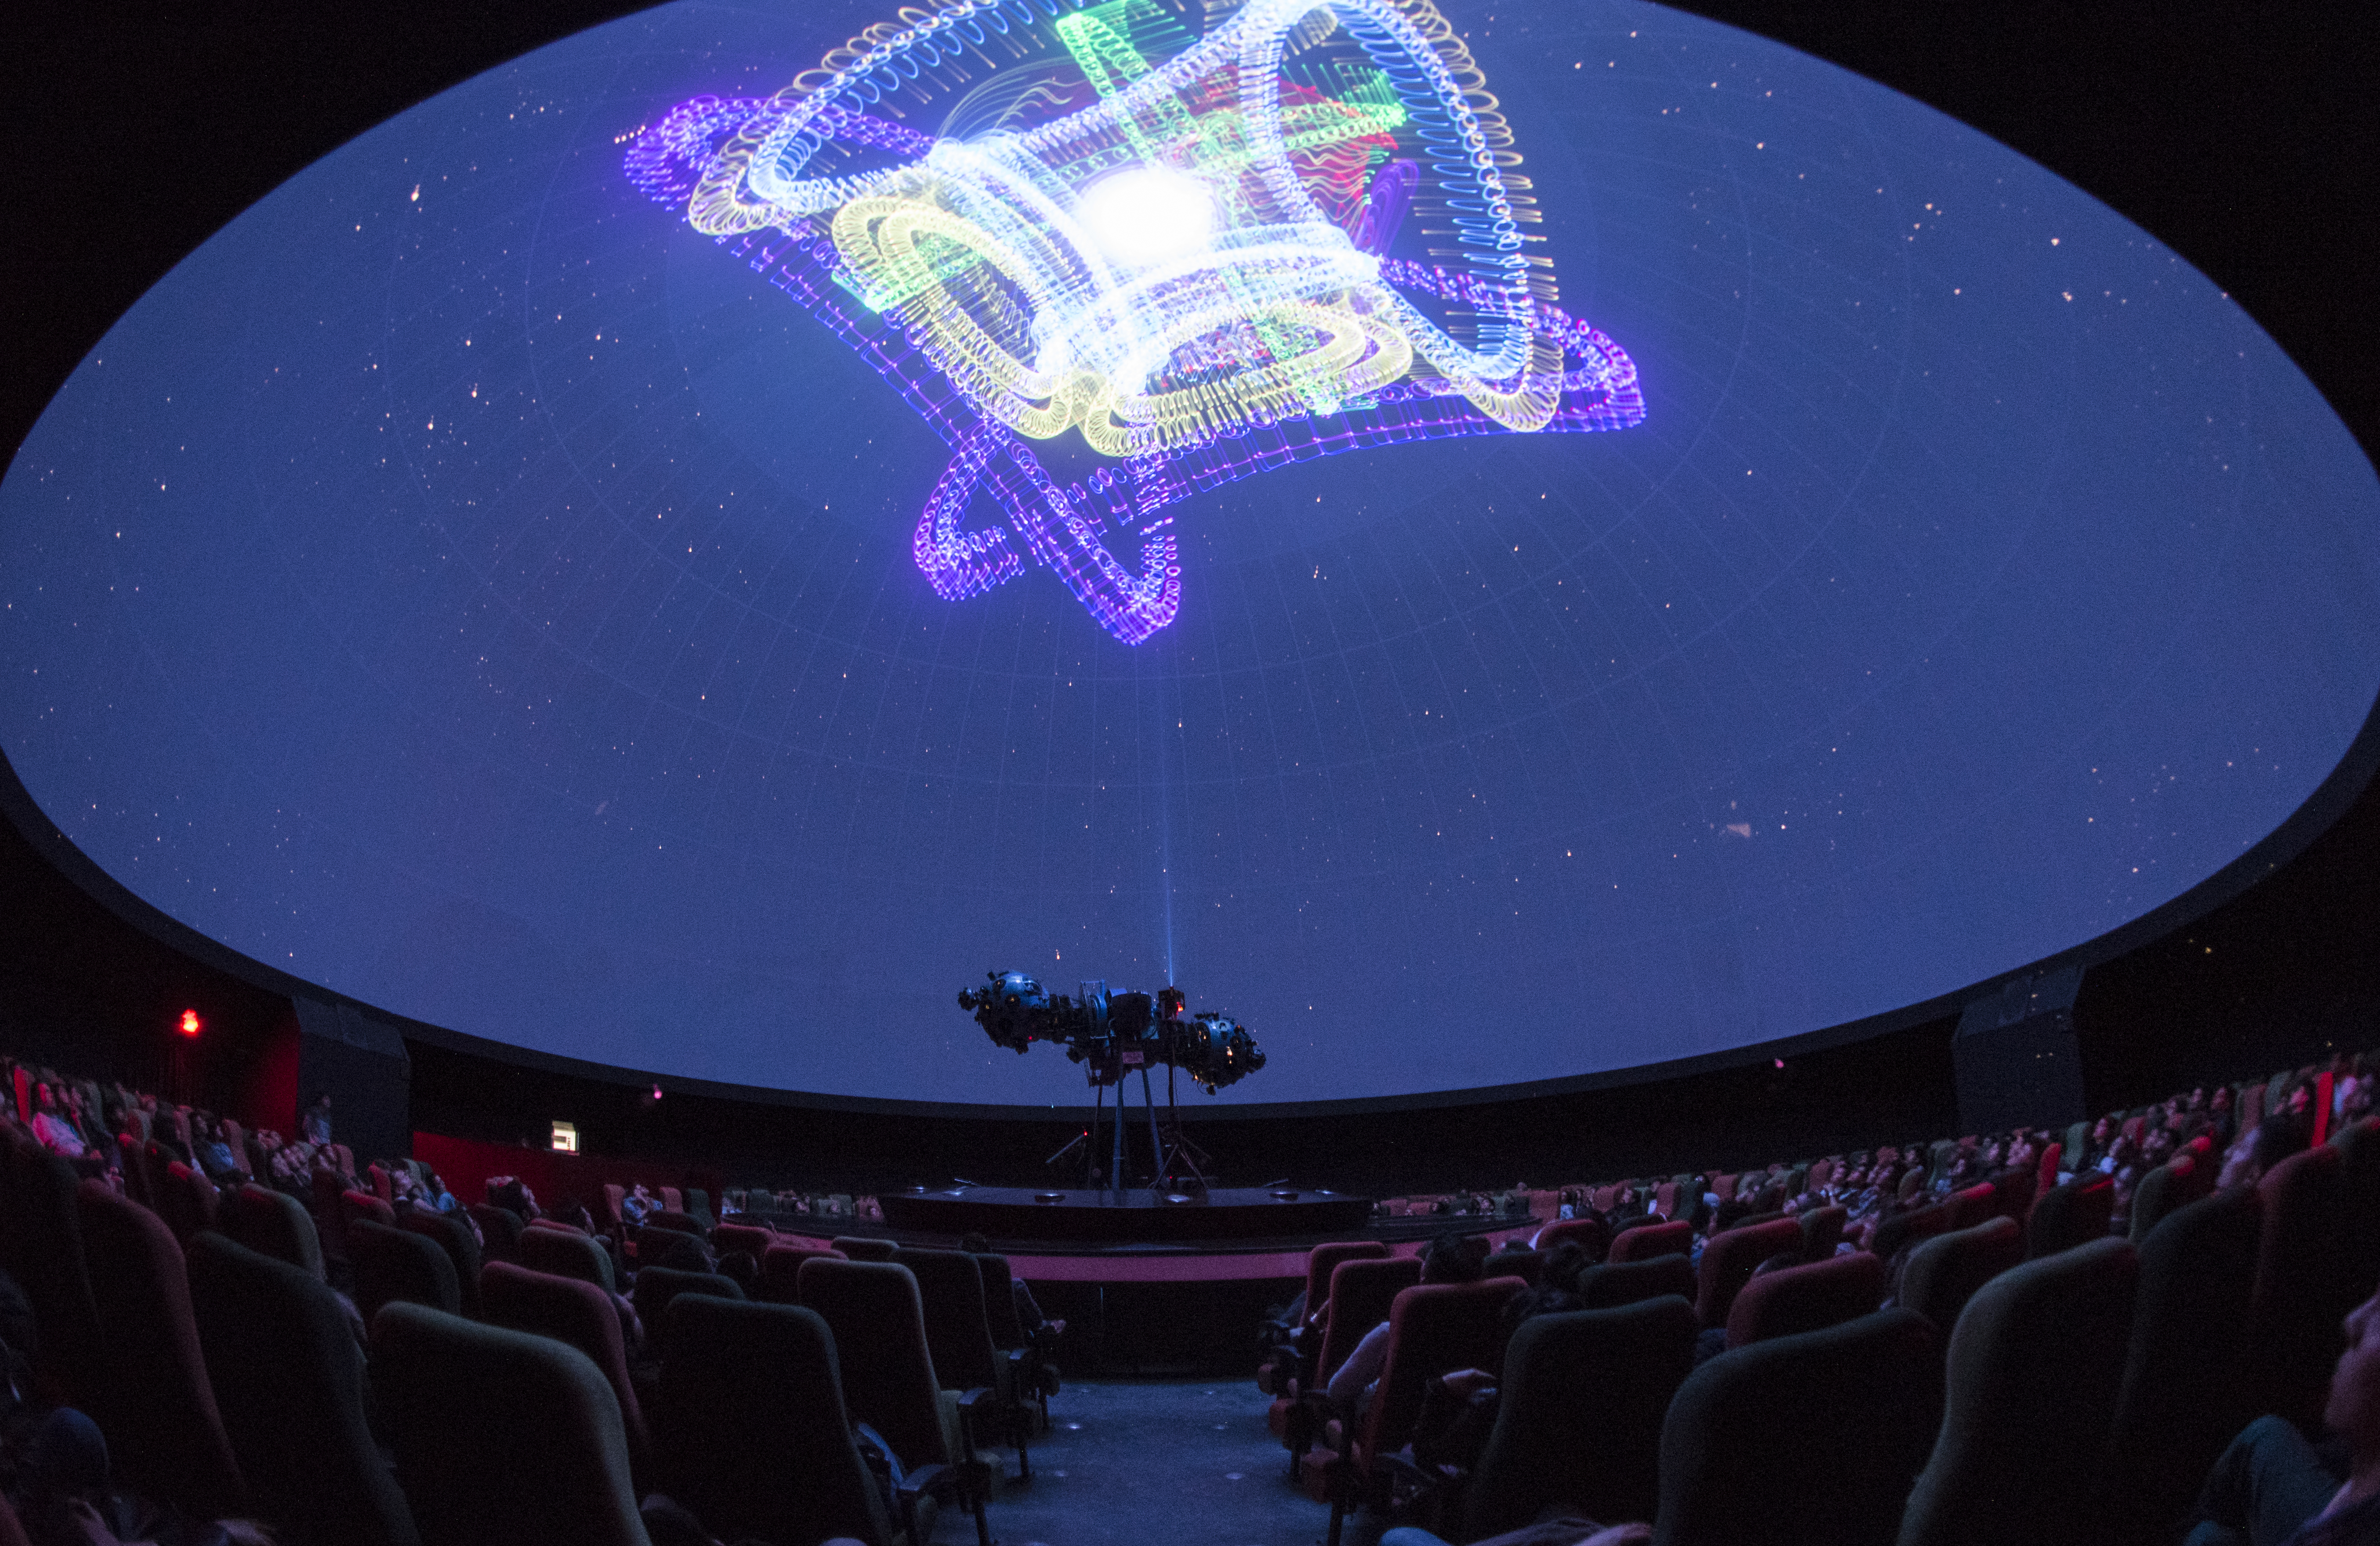 Imagen de algunos de los show láser presentados en el domo del Planetario de Bogotá. Foto: Planetario de Bogotá.